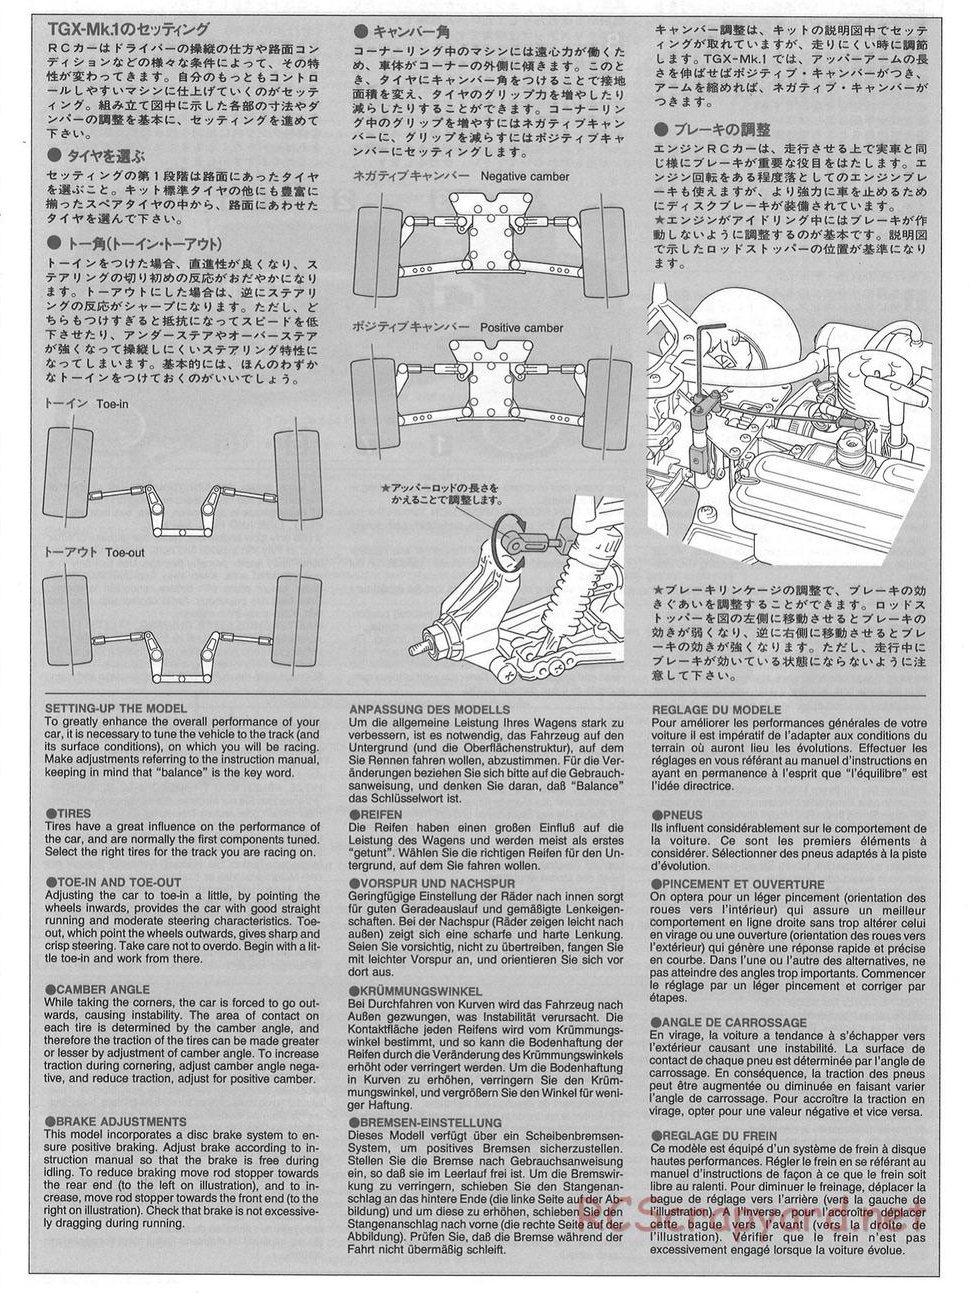 Tamiya - TGX Mk.1 Chassis - Manual - Page 22